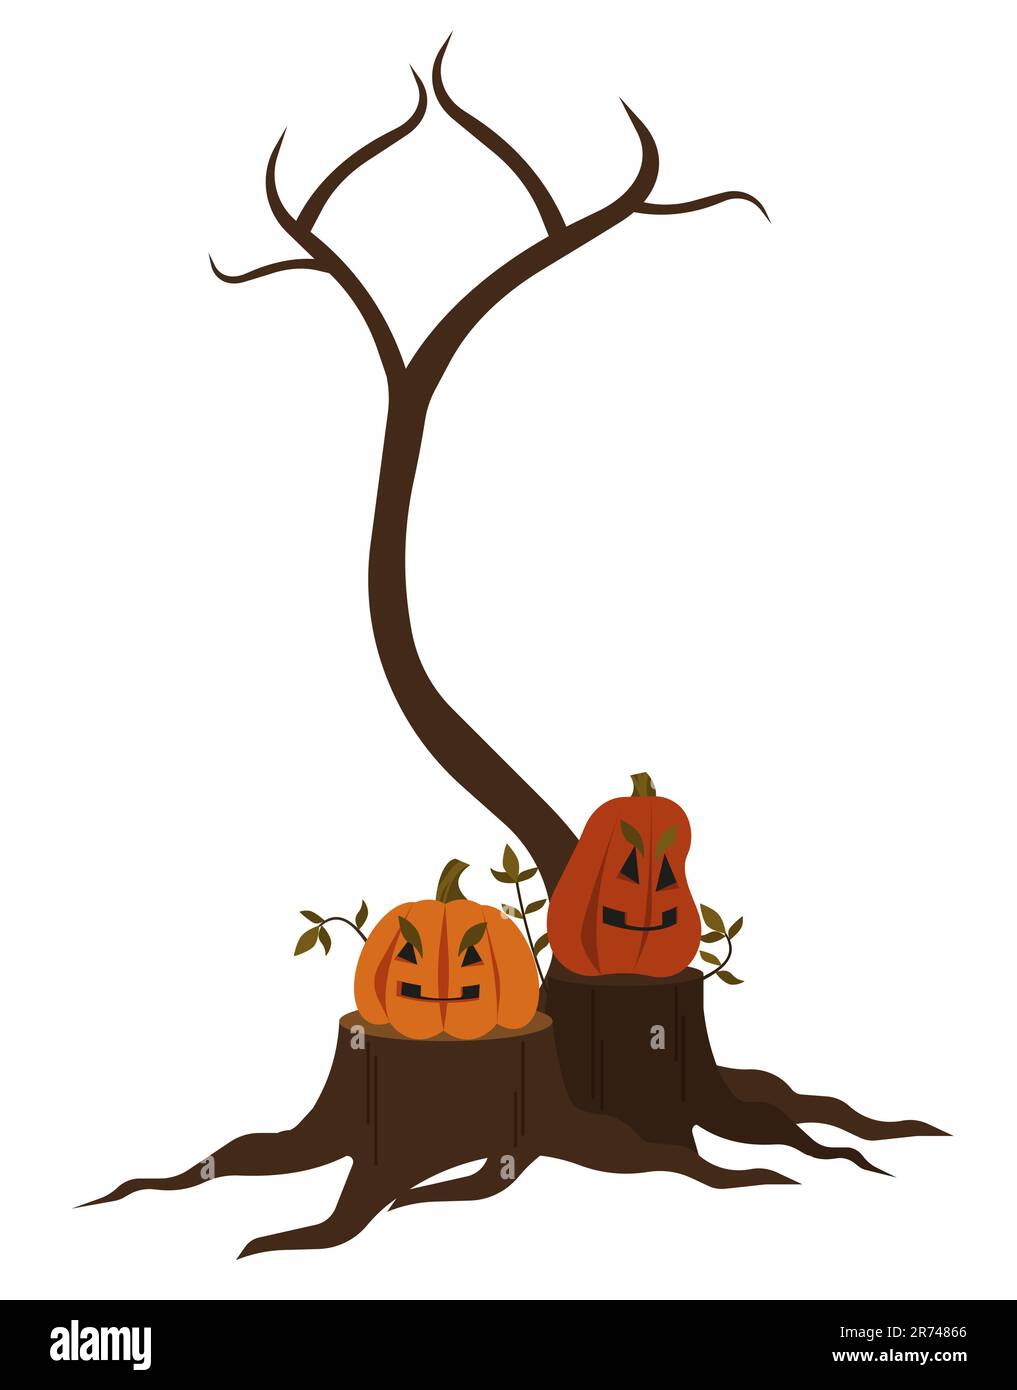 Kürbisse auf Stümpfen, Herbstbaum ohne Blätter. Isoliertes halloween-Objekt auf weißem Hintergrund. Vektordarstellung der flachen Konstruktion. Stock Vektor